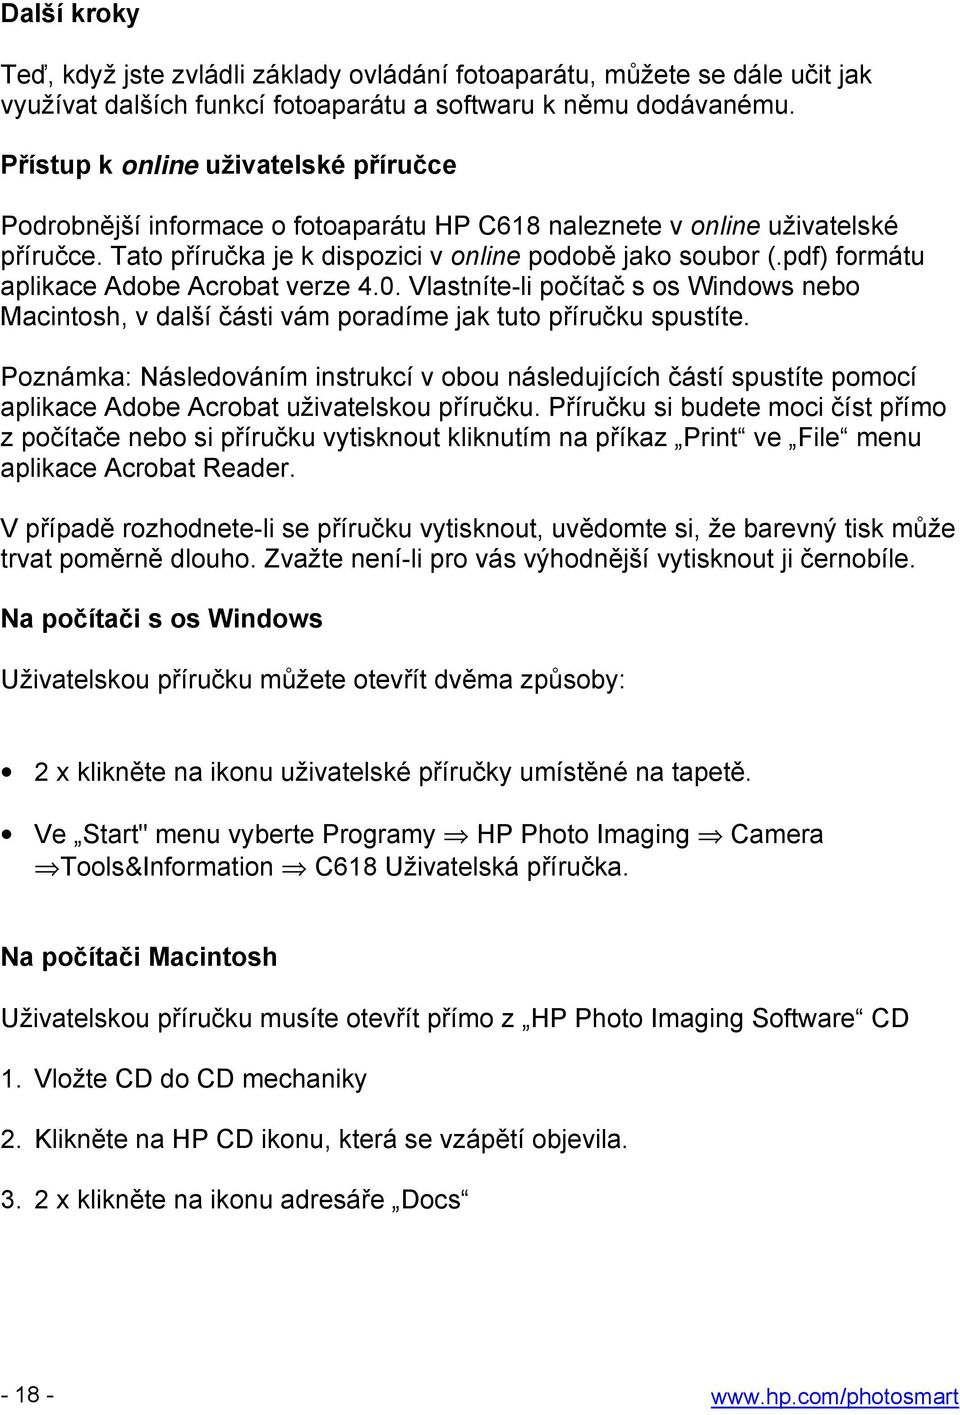 pdf) formátu aplikace Adobe Acrobat verze 4.0. Vlastníte-li počítač s os Windows nebo Macintosh, v další části vám poradíme jak tuto příručku spustíte.